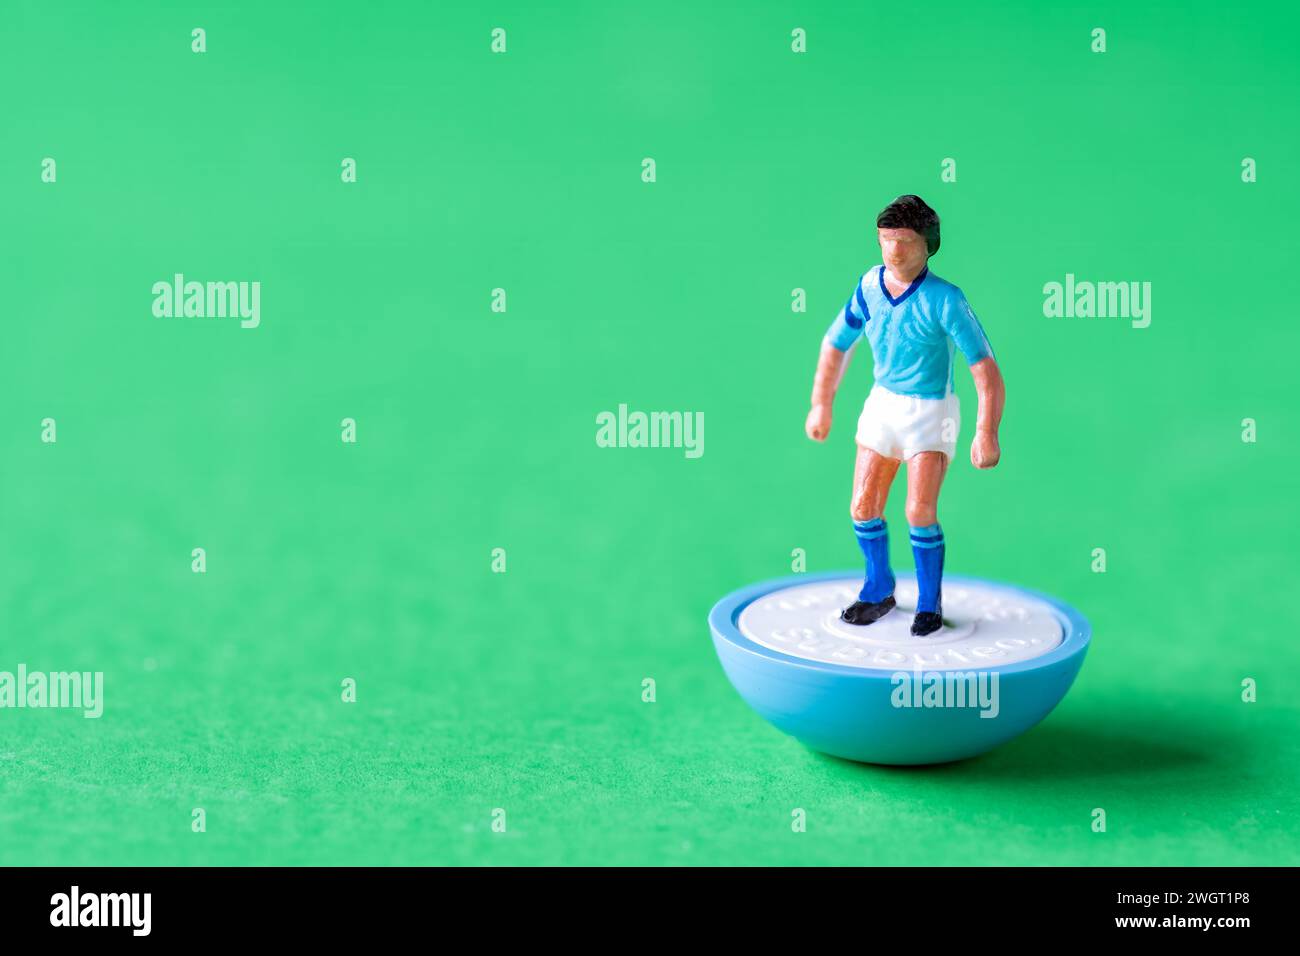 Eine einzelne Subbuteo Minifigur in den Farben der Manchester City FC Heimmannschaft mit himmelblauem Shirt, weißen Shorts und himmelblauen Socken. Stockfoto